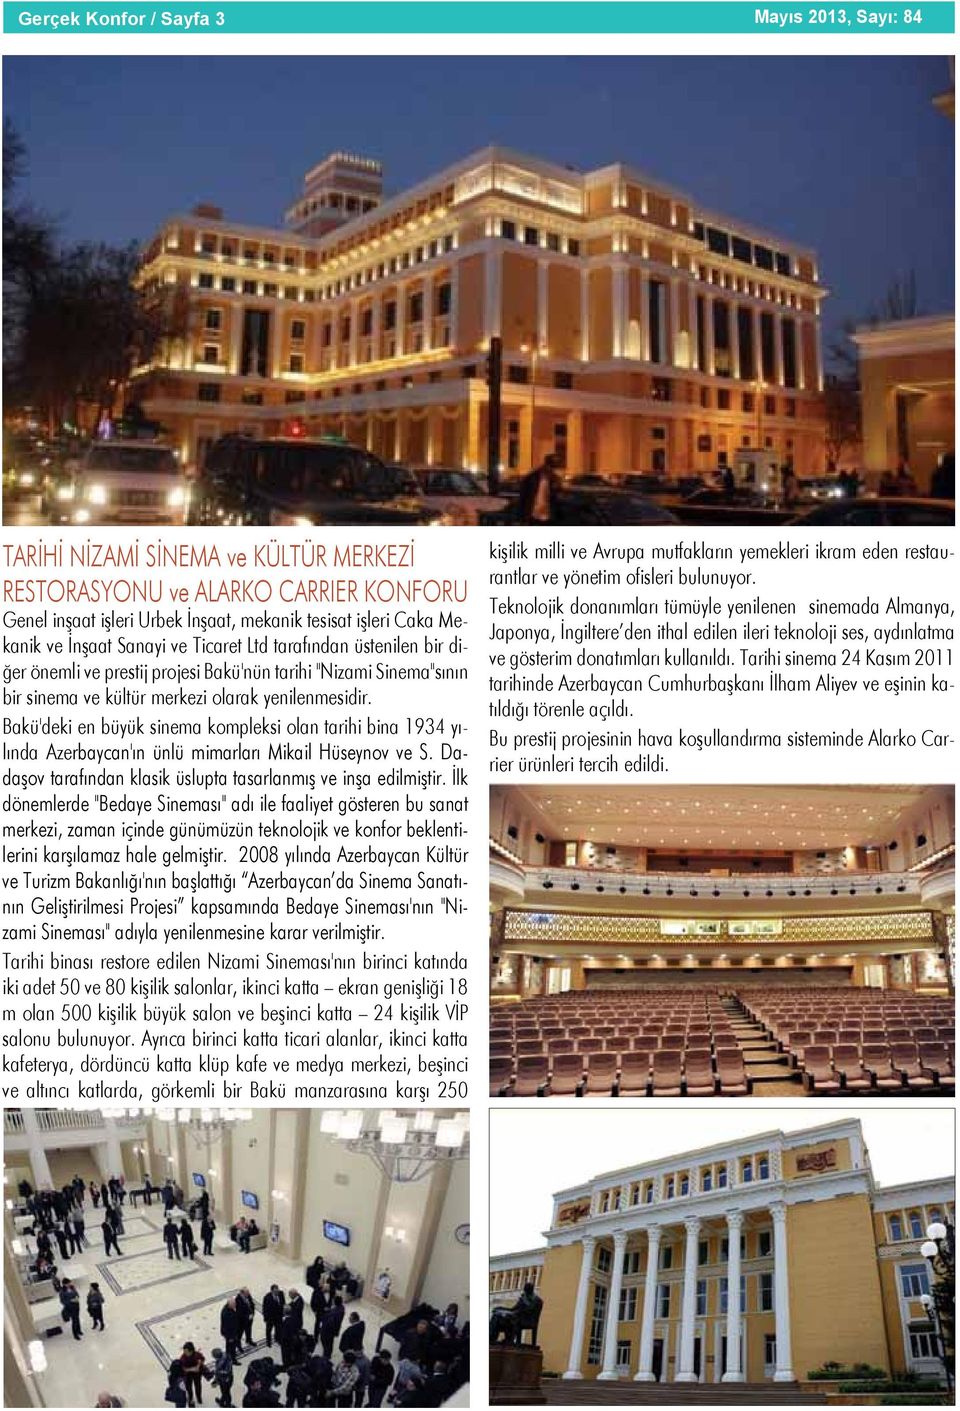 Bakü'deki en büyük sinema kompleksi olan tarihi bina 1934 yılında Azerbaycan'ın ünlü mimarları Mikail Hüseynov ve S. Dadaşov tarafından klasik üslupta tasarlanmış ve inşa edilmiştir.